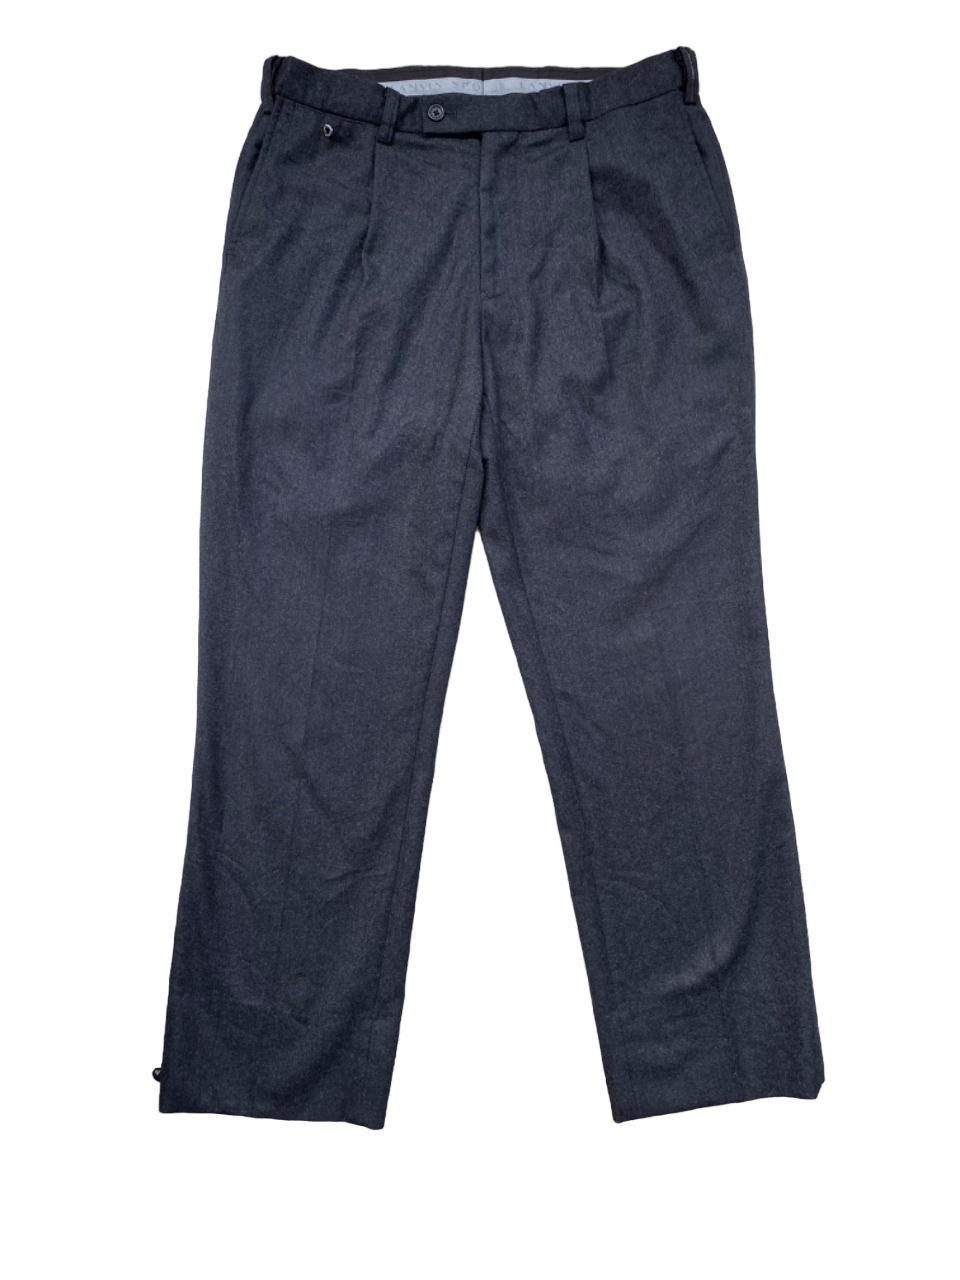 Lanvin Lanvin Sport Wool Trouser Pants | Grailed